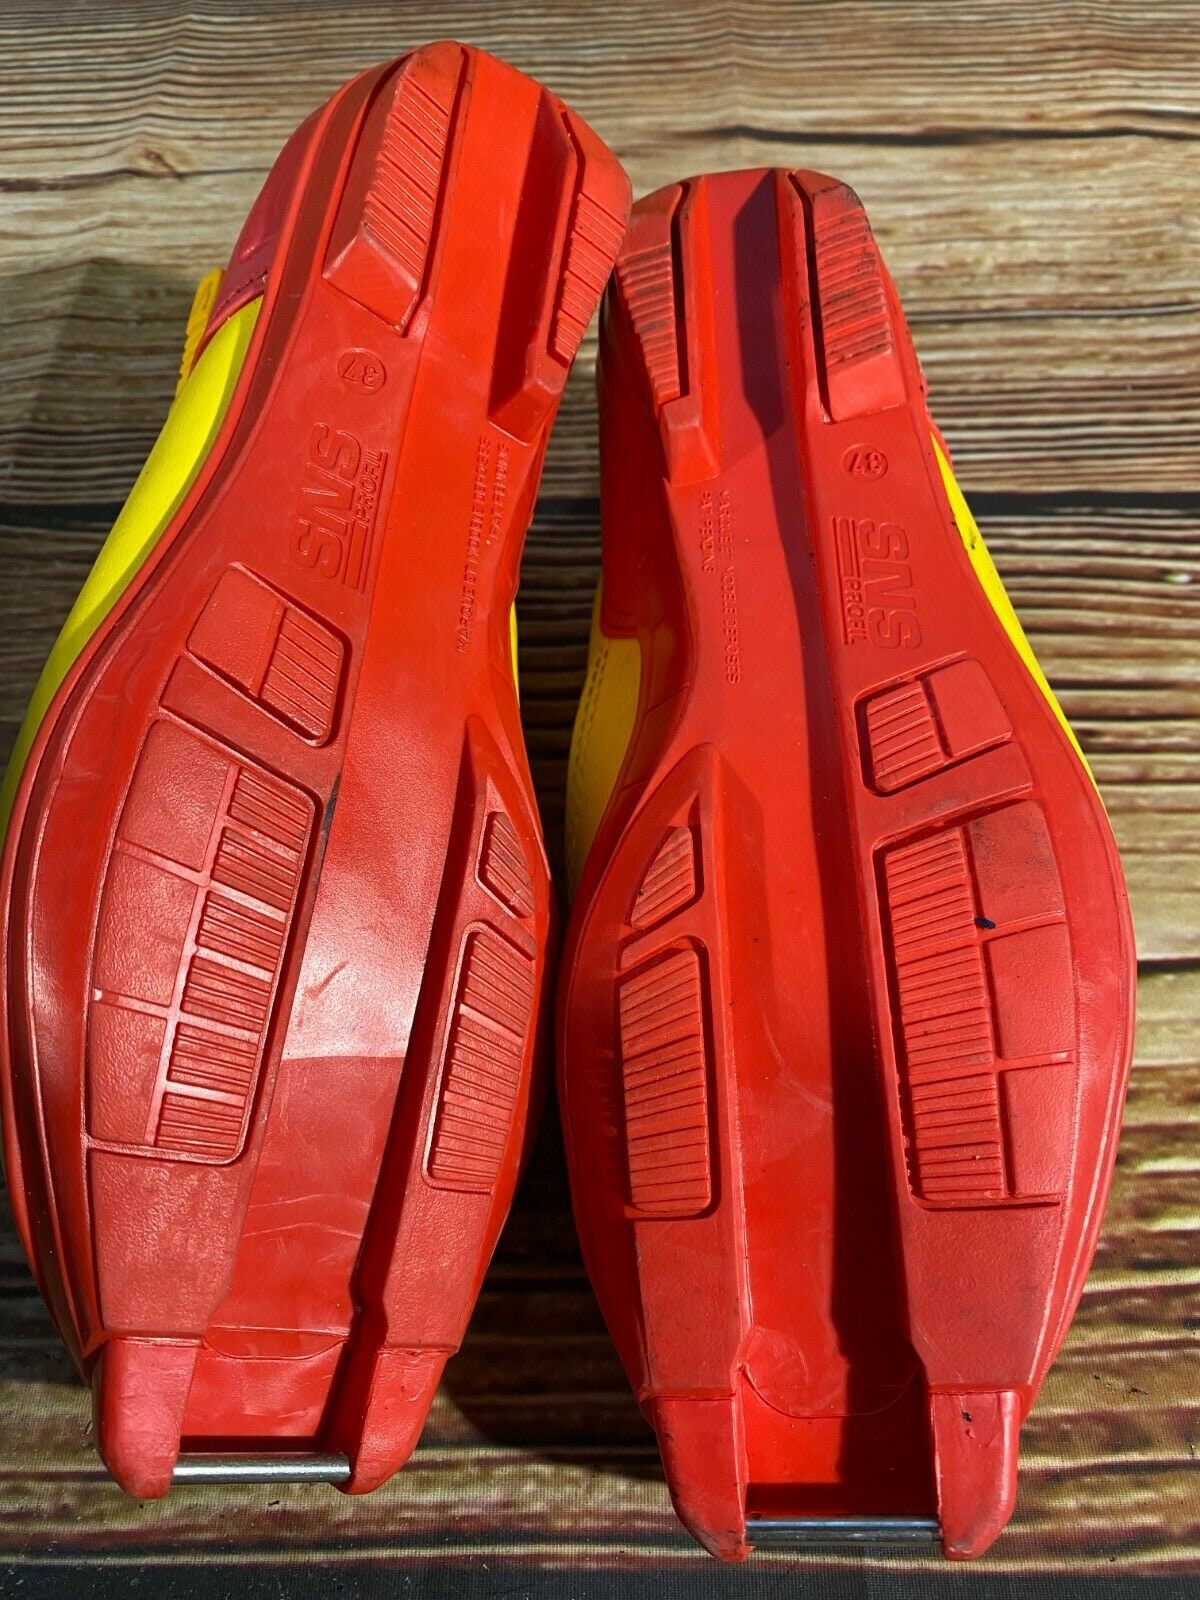 Schoenen Jongensschoenen Laarzen Salomon V7 Langlaufschoenen Maat EU37 US5 voor SNS Profil 